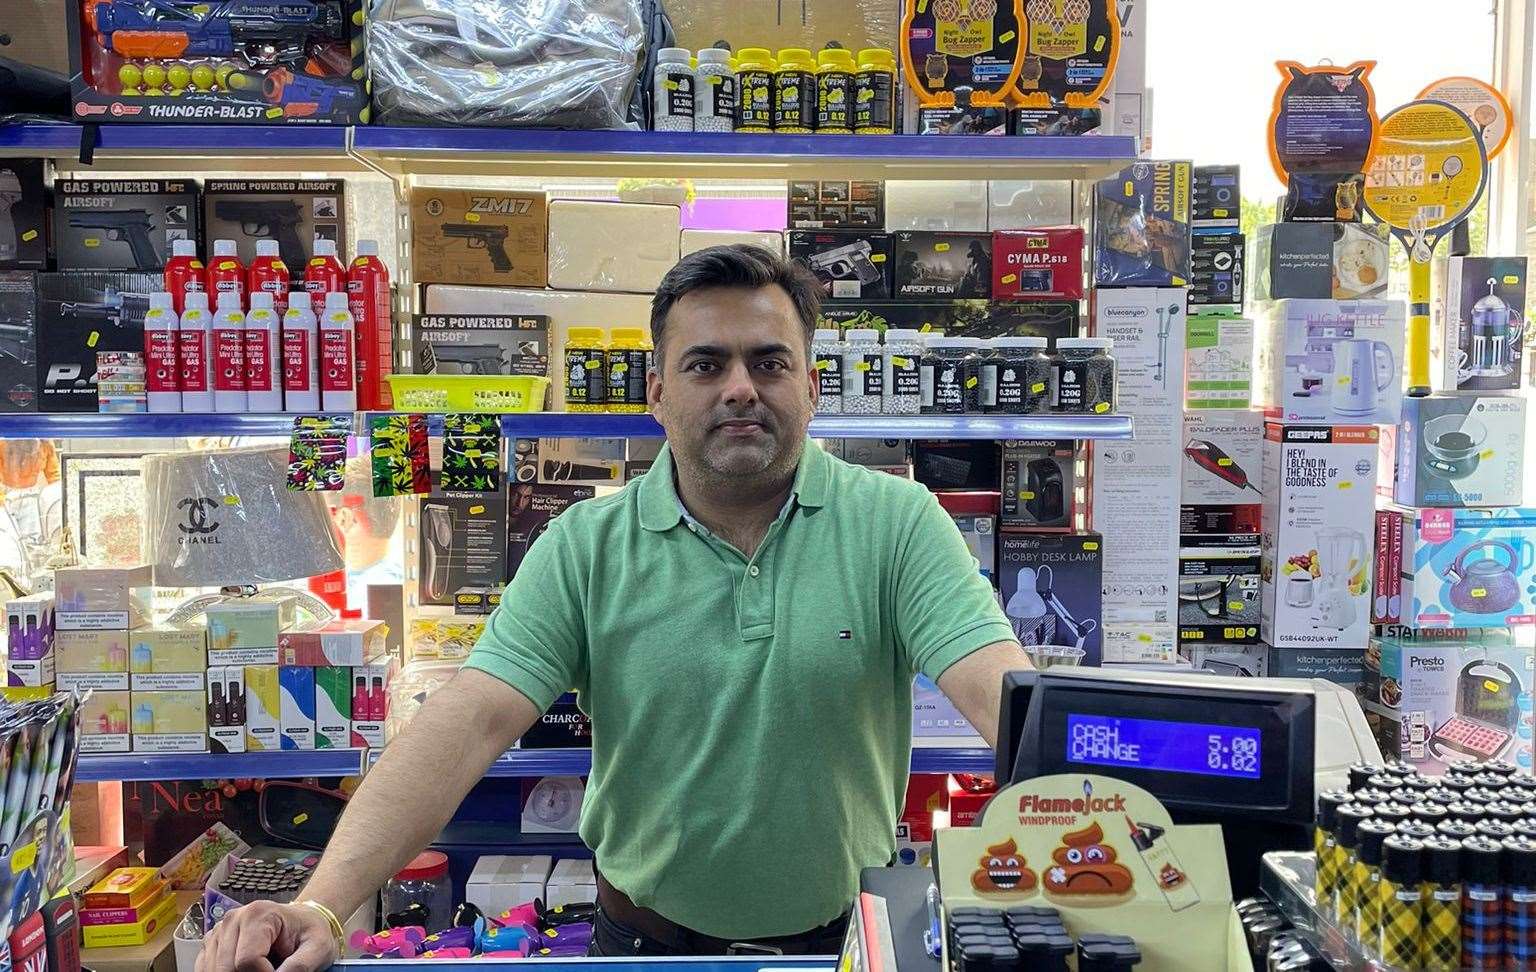 Mr Wadhwa sells airshot guns at his shop in Sittingbourne